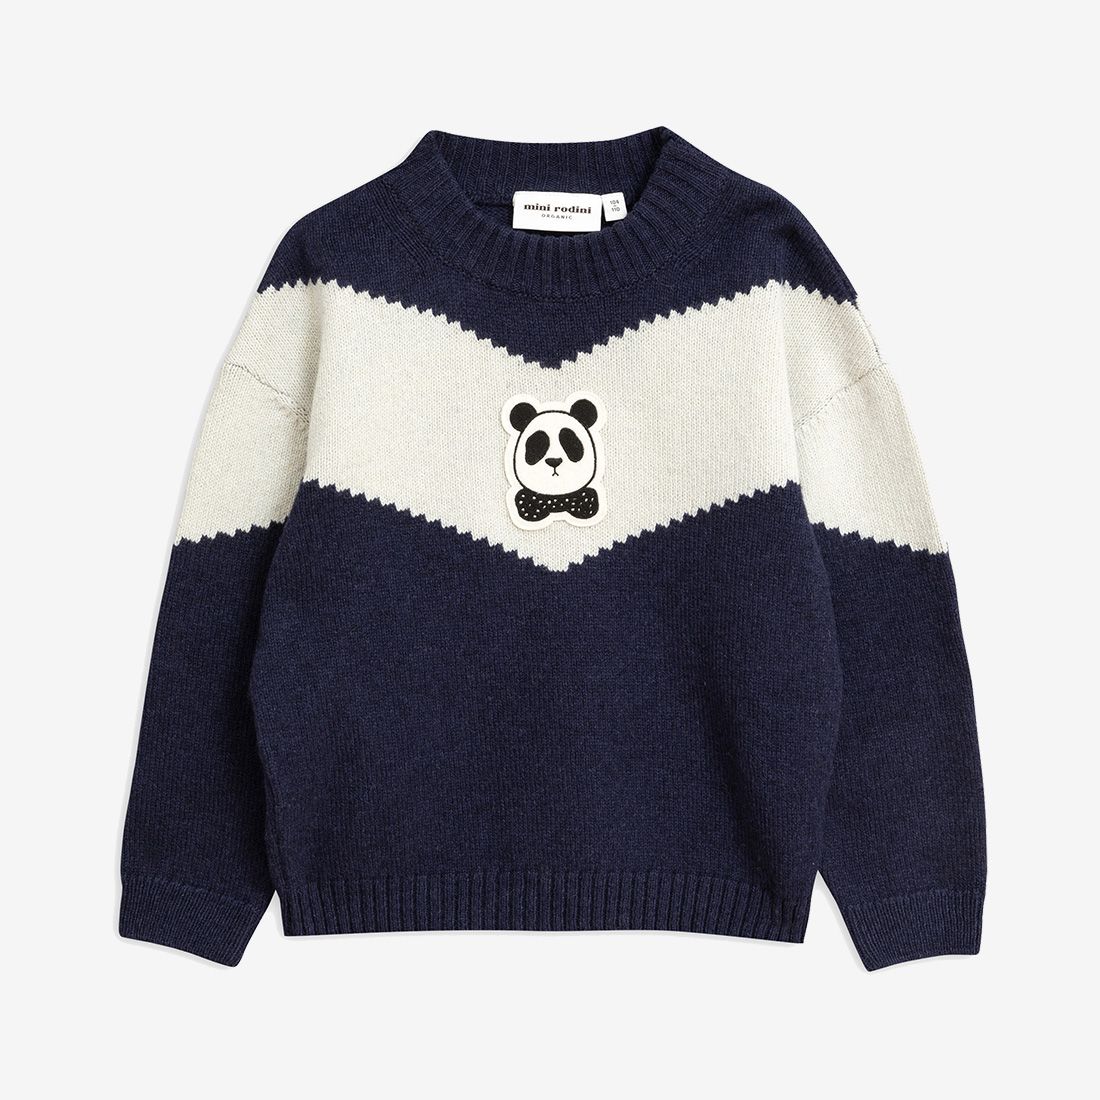 Mini Rodini Panda Knitted Wool Sweater